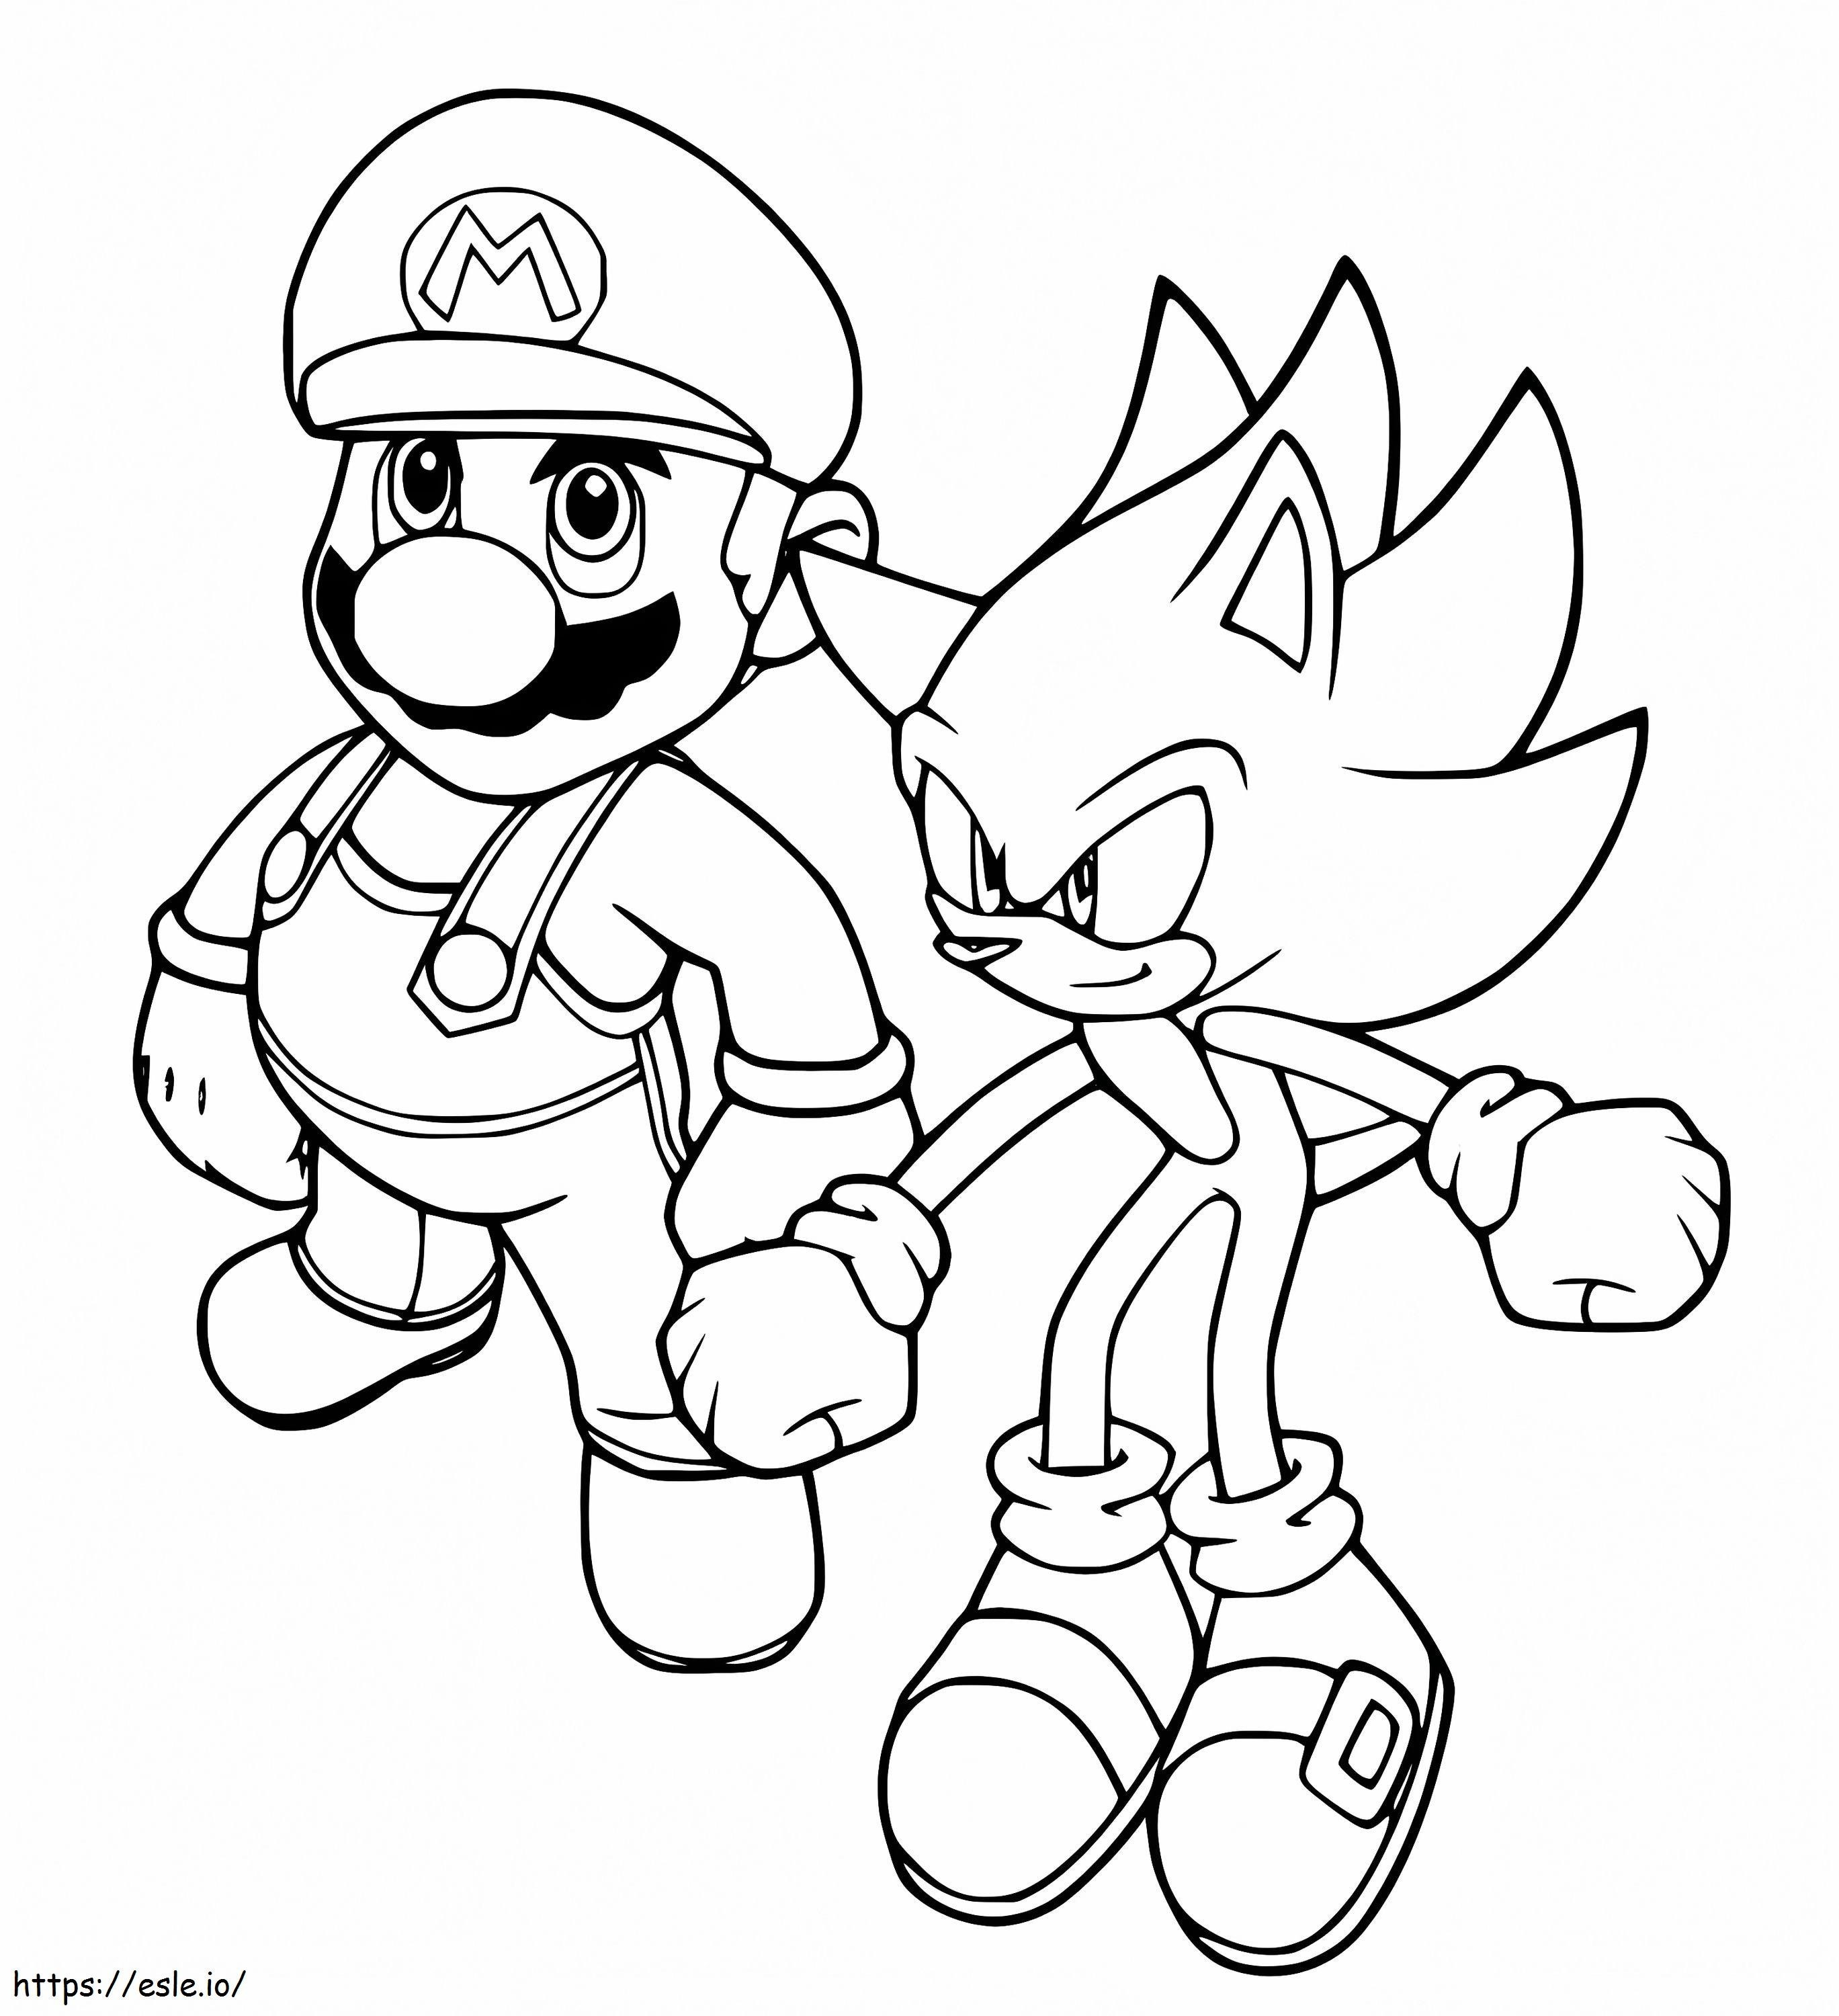 Mario és Sonic kifestő